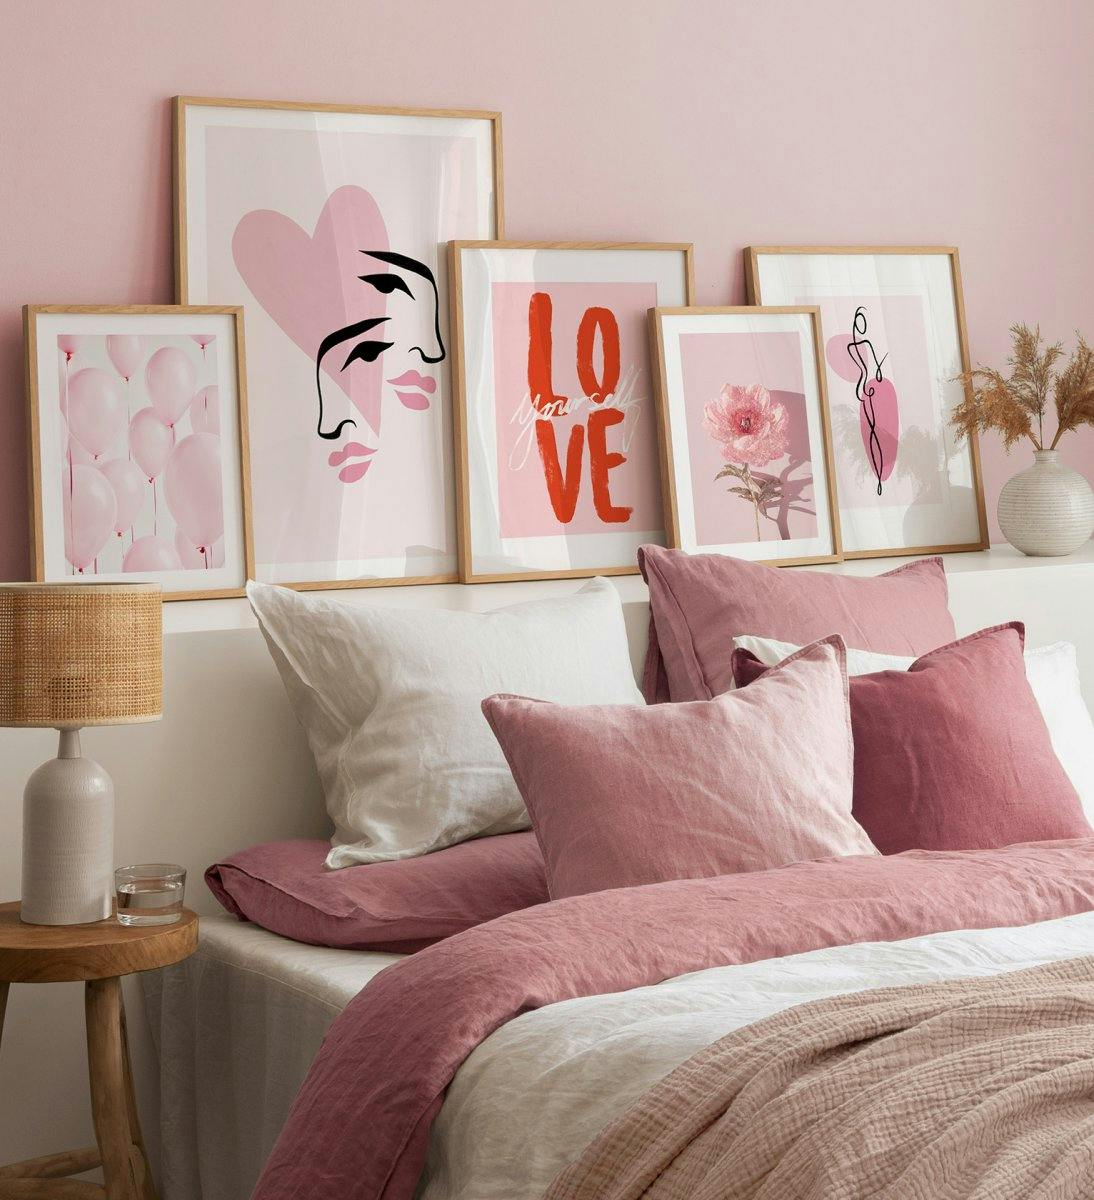 جدار المعرض باللون الوردي مع الرسوم التوضيحية والصور الفوتوغرافية للزهور والأشكال الخطية والاقتباسات مع إطارات البلوط لغرفة النو